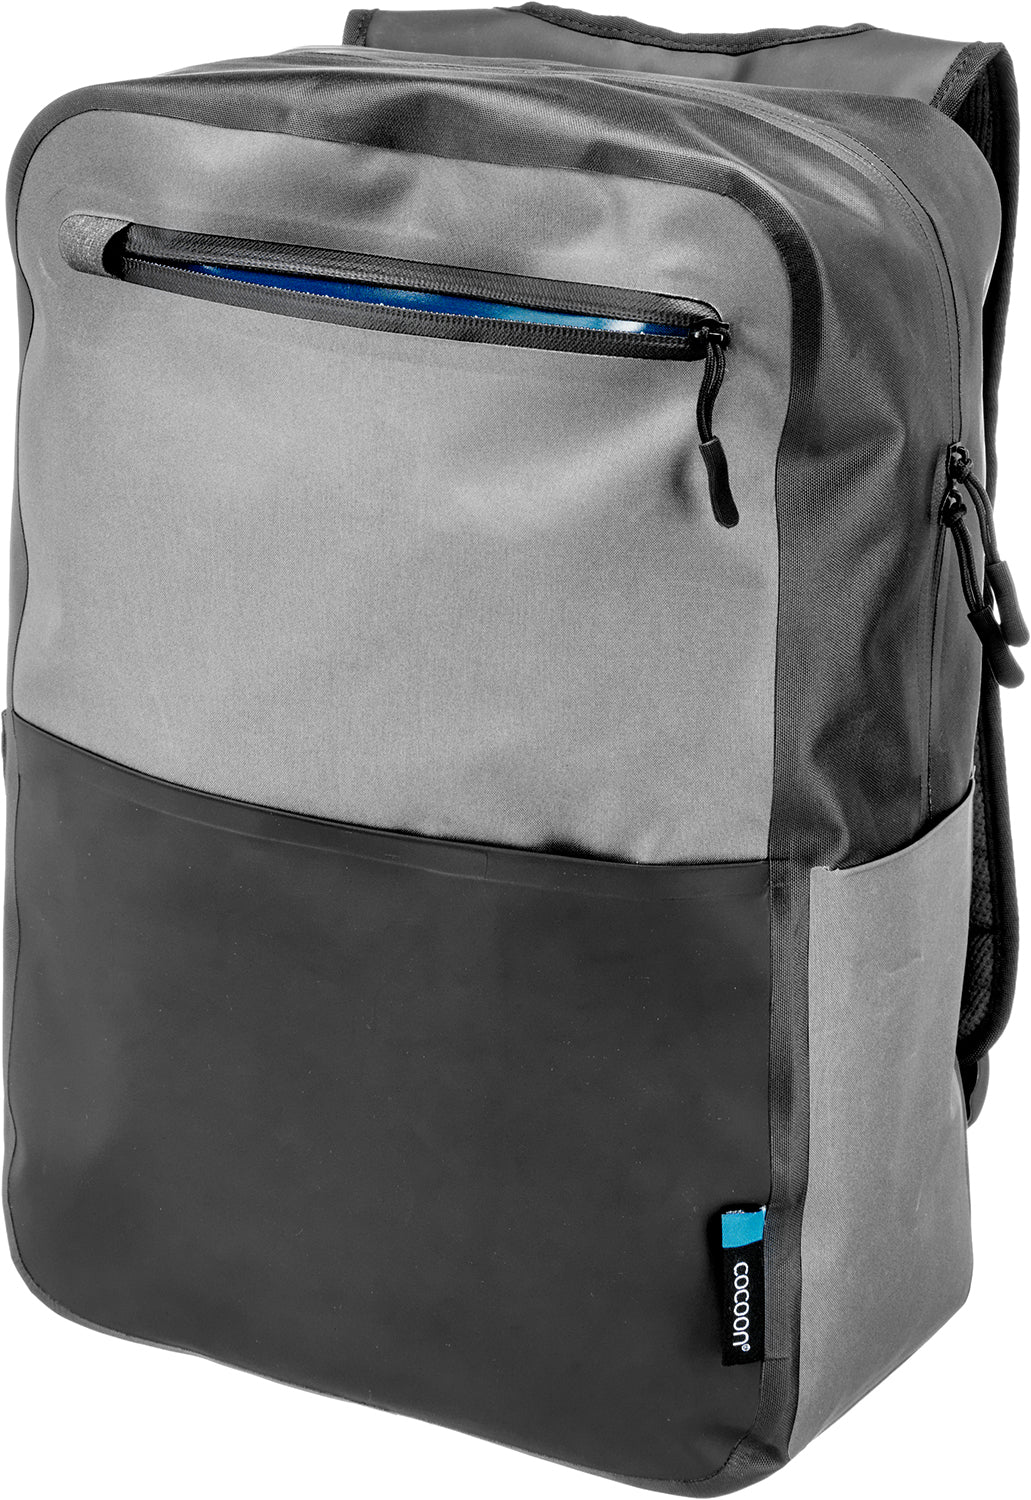 Cocoon City Traveler Backpack grey/black/blue